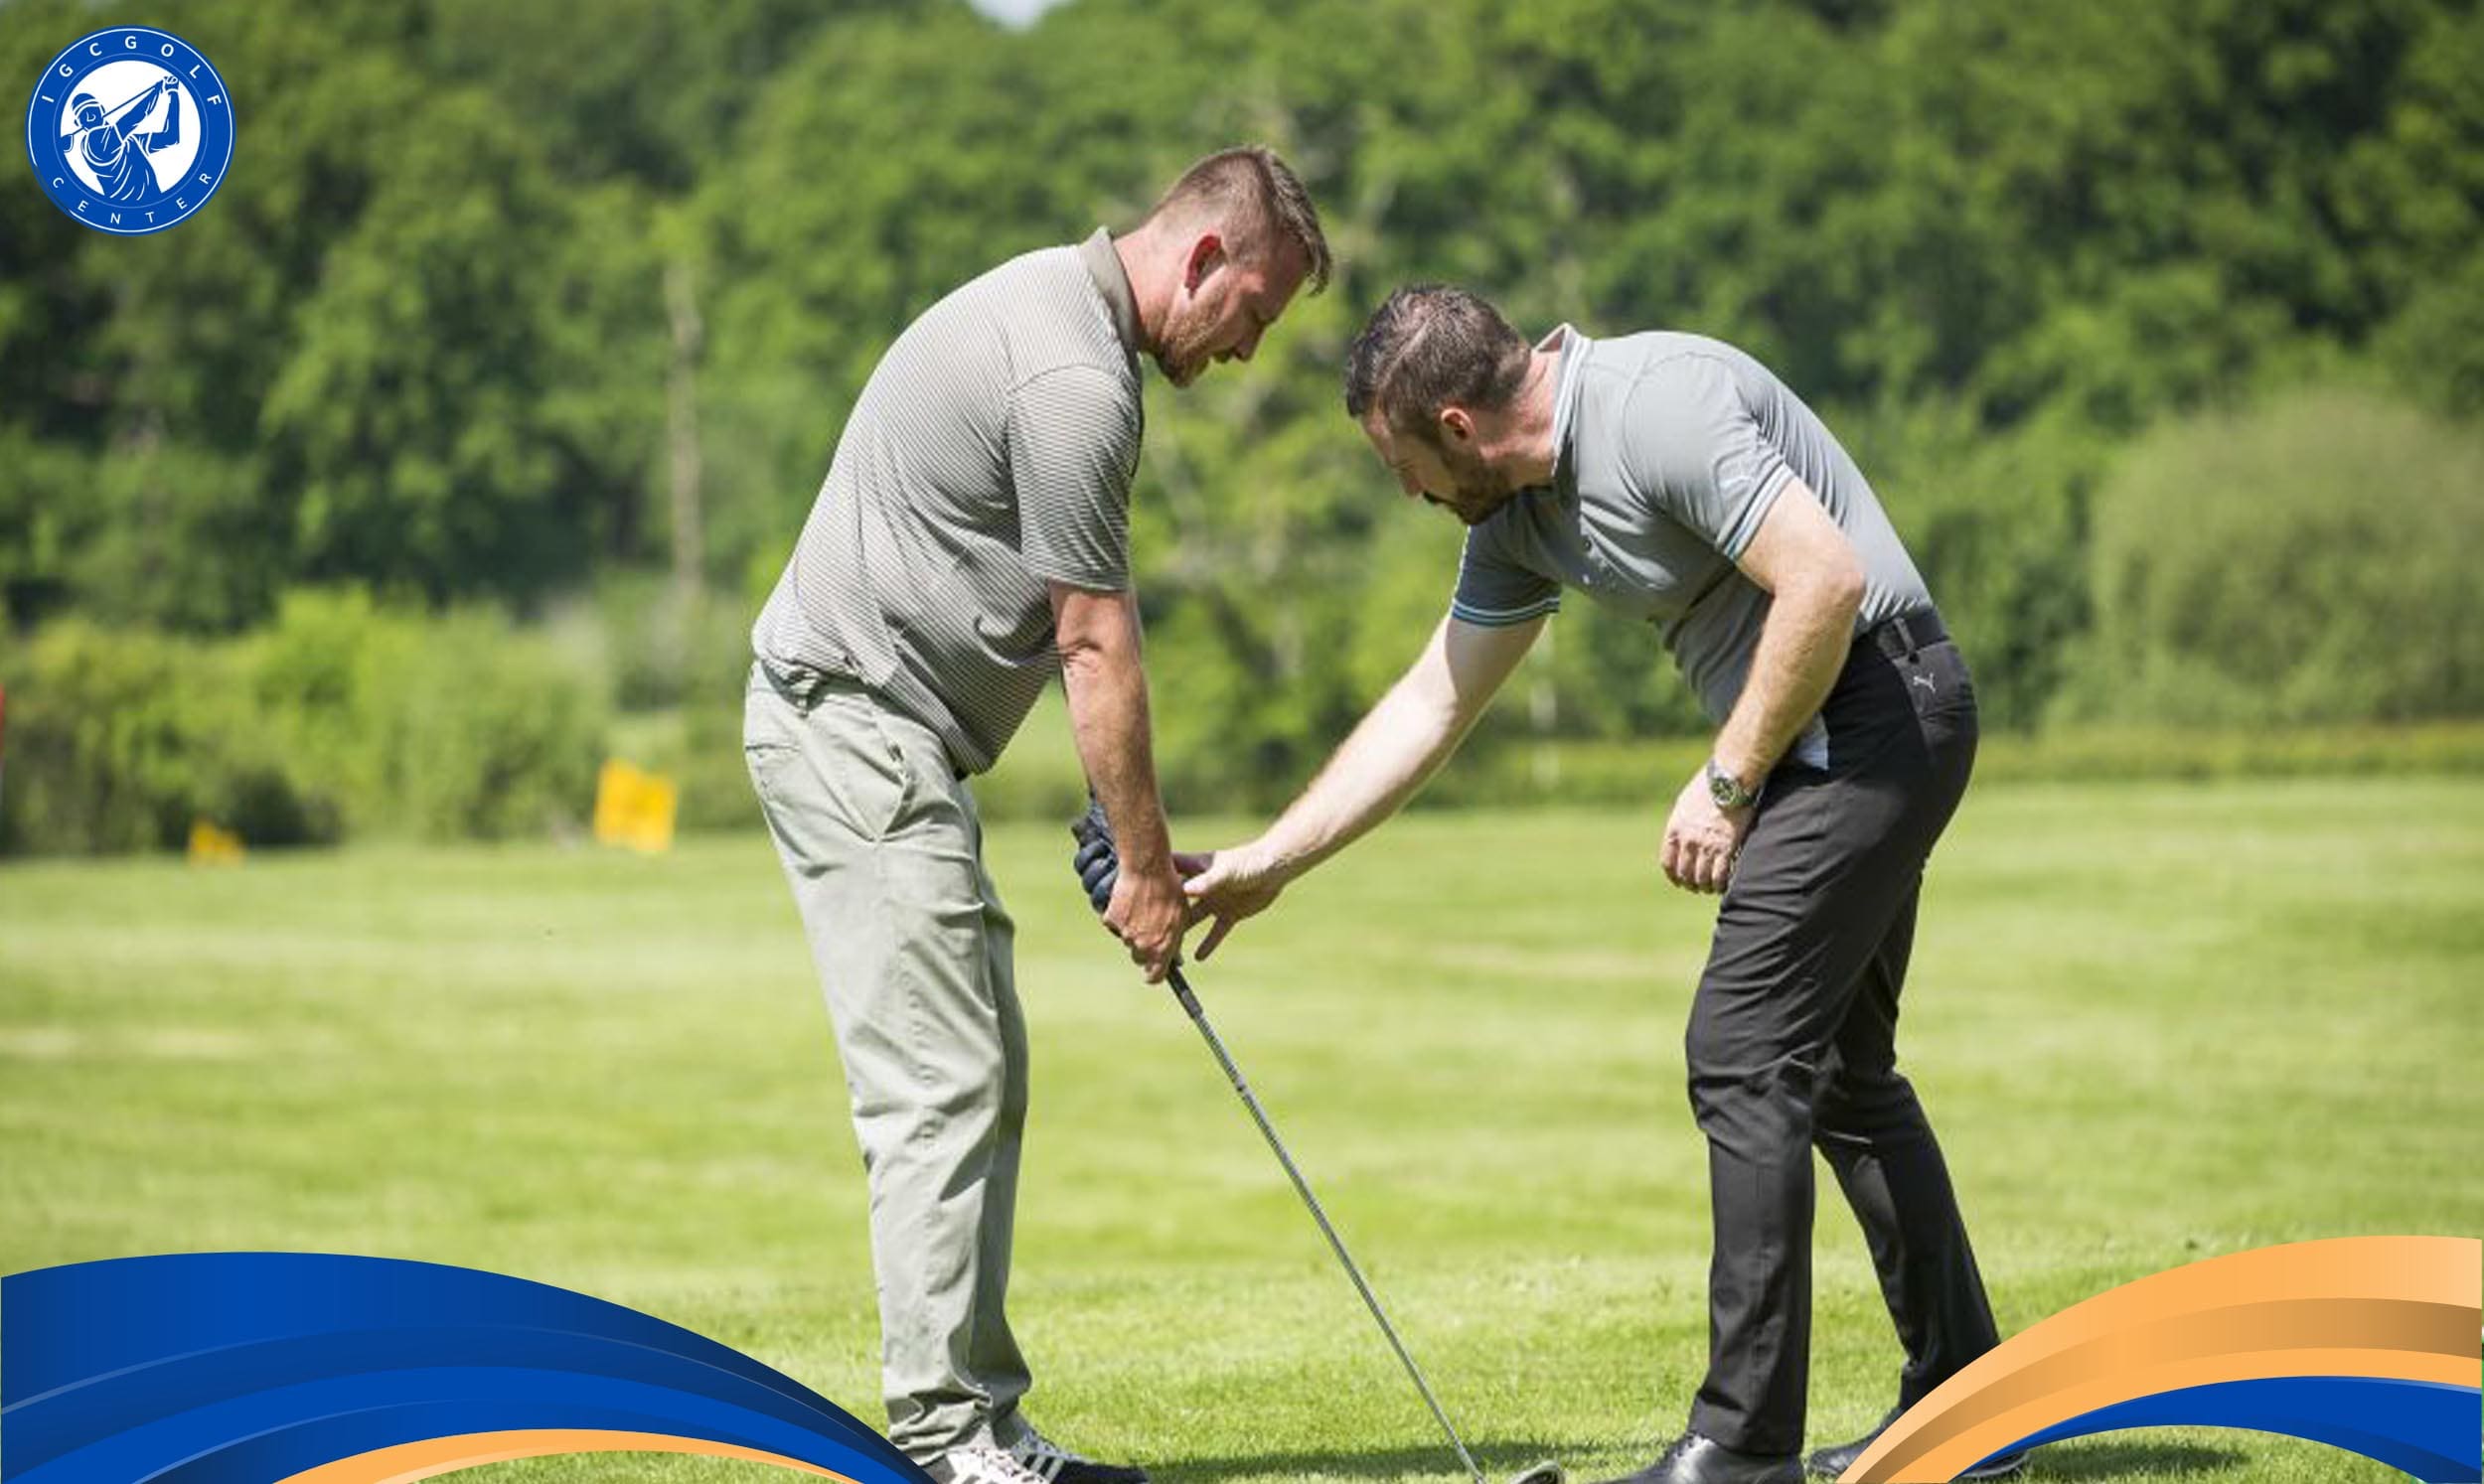 Trung tâm dạy golf chuyên nghiệp uy tín ĐẠT CHUẨN quốc tế